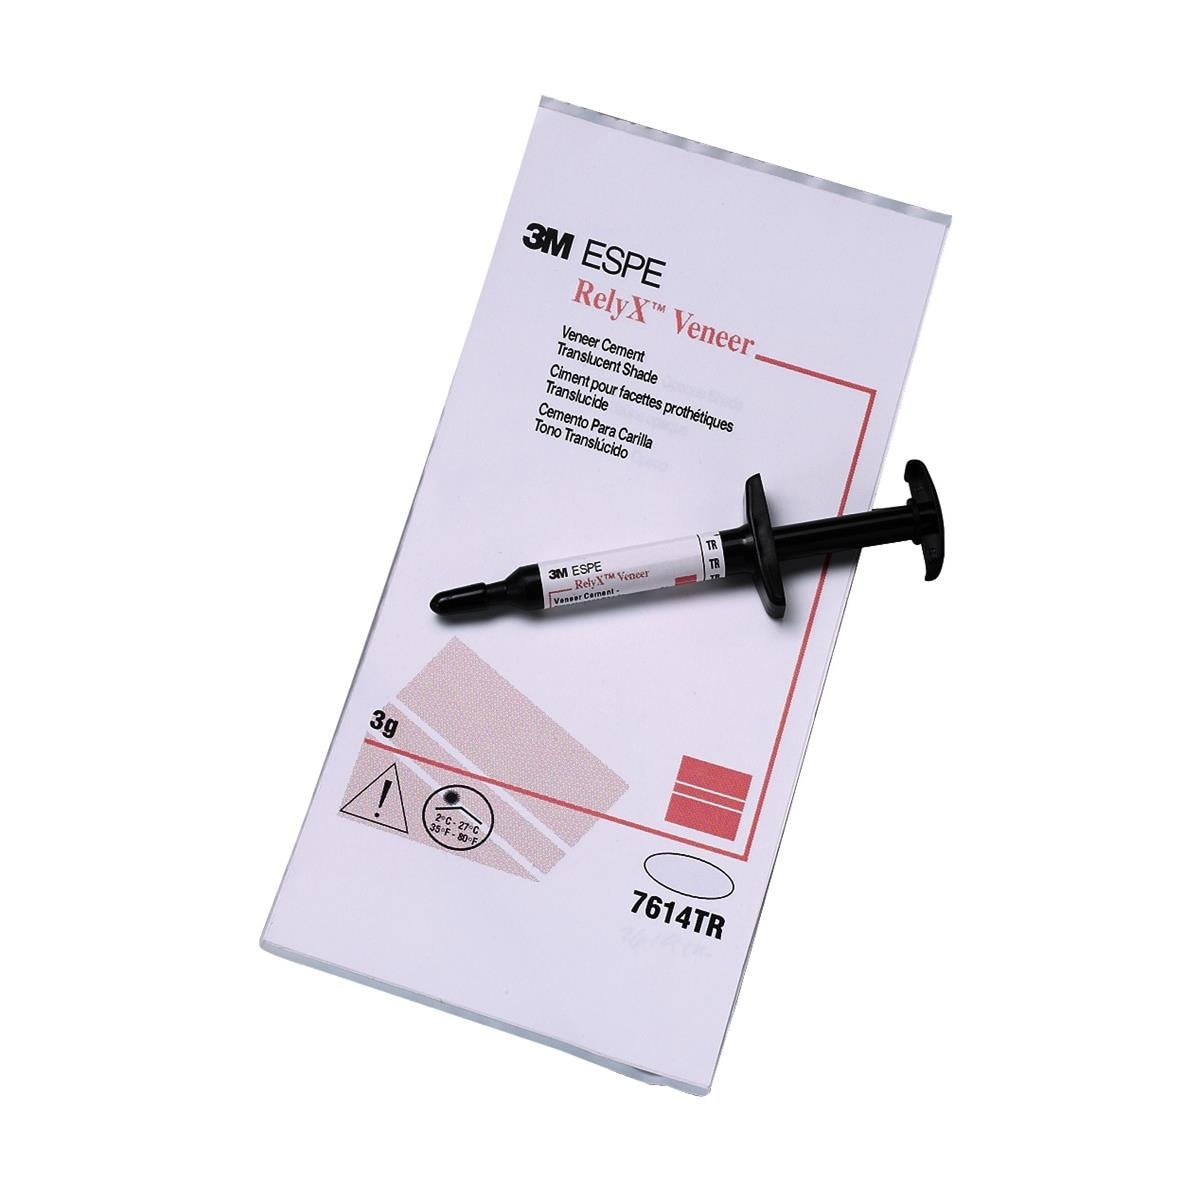 RelyX Veneer Syringe 3g Translucent - Henry Schein Ireland